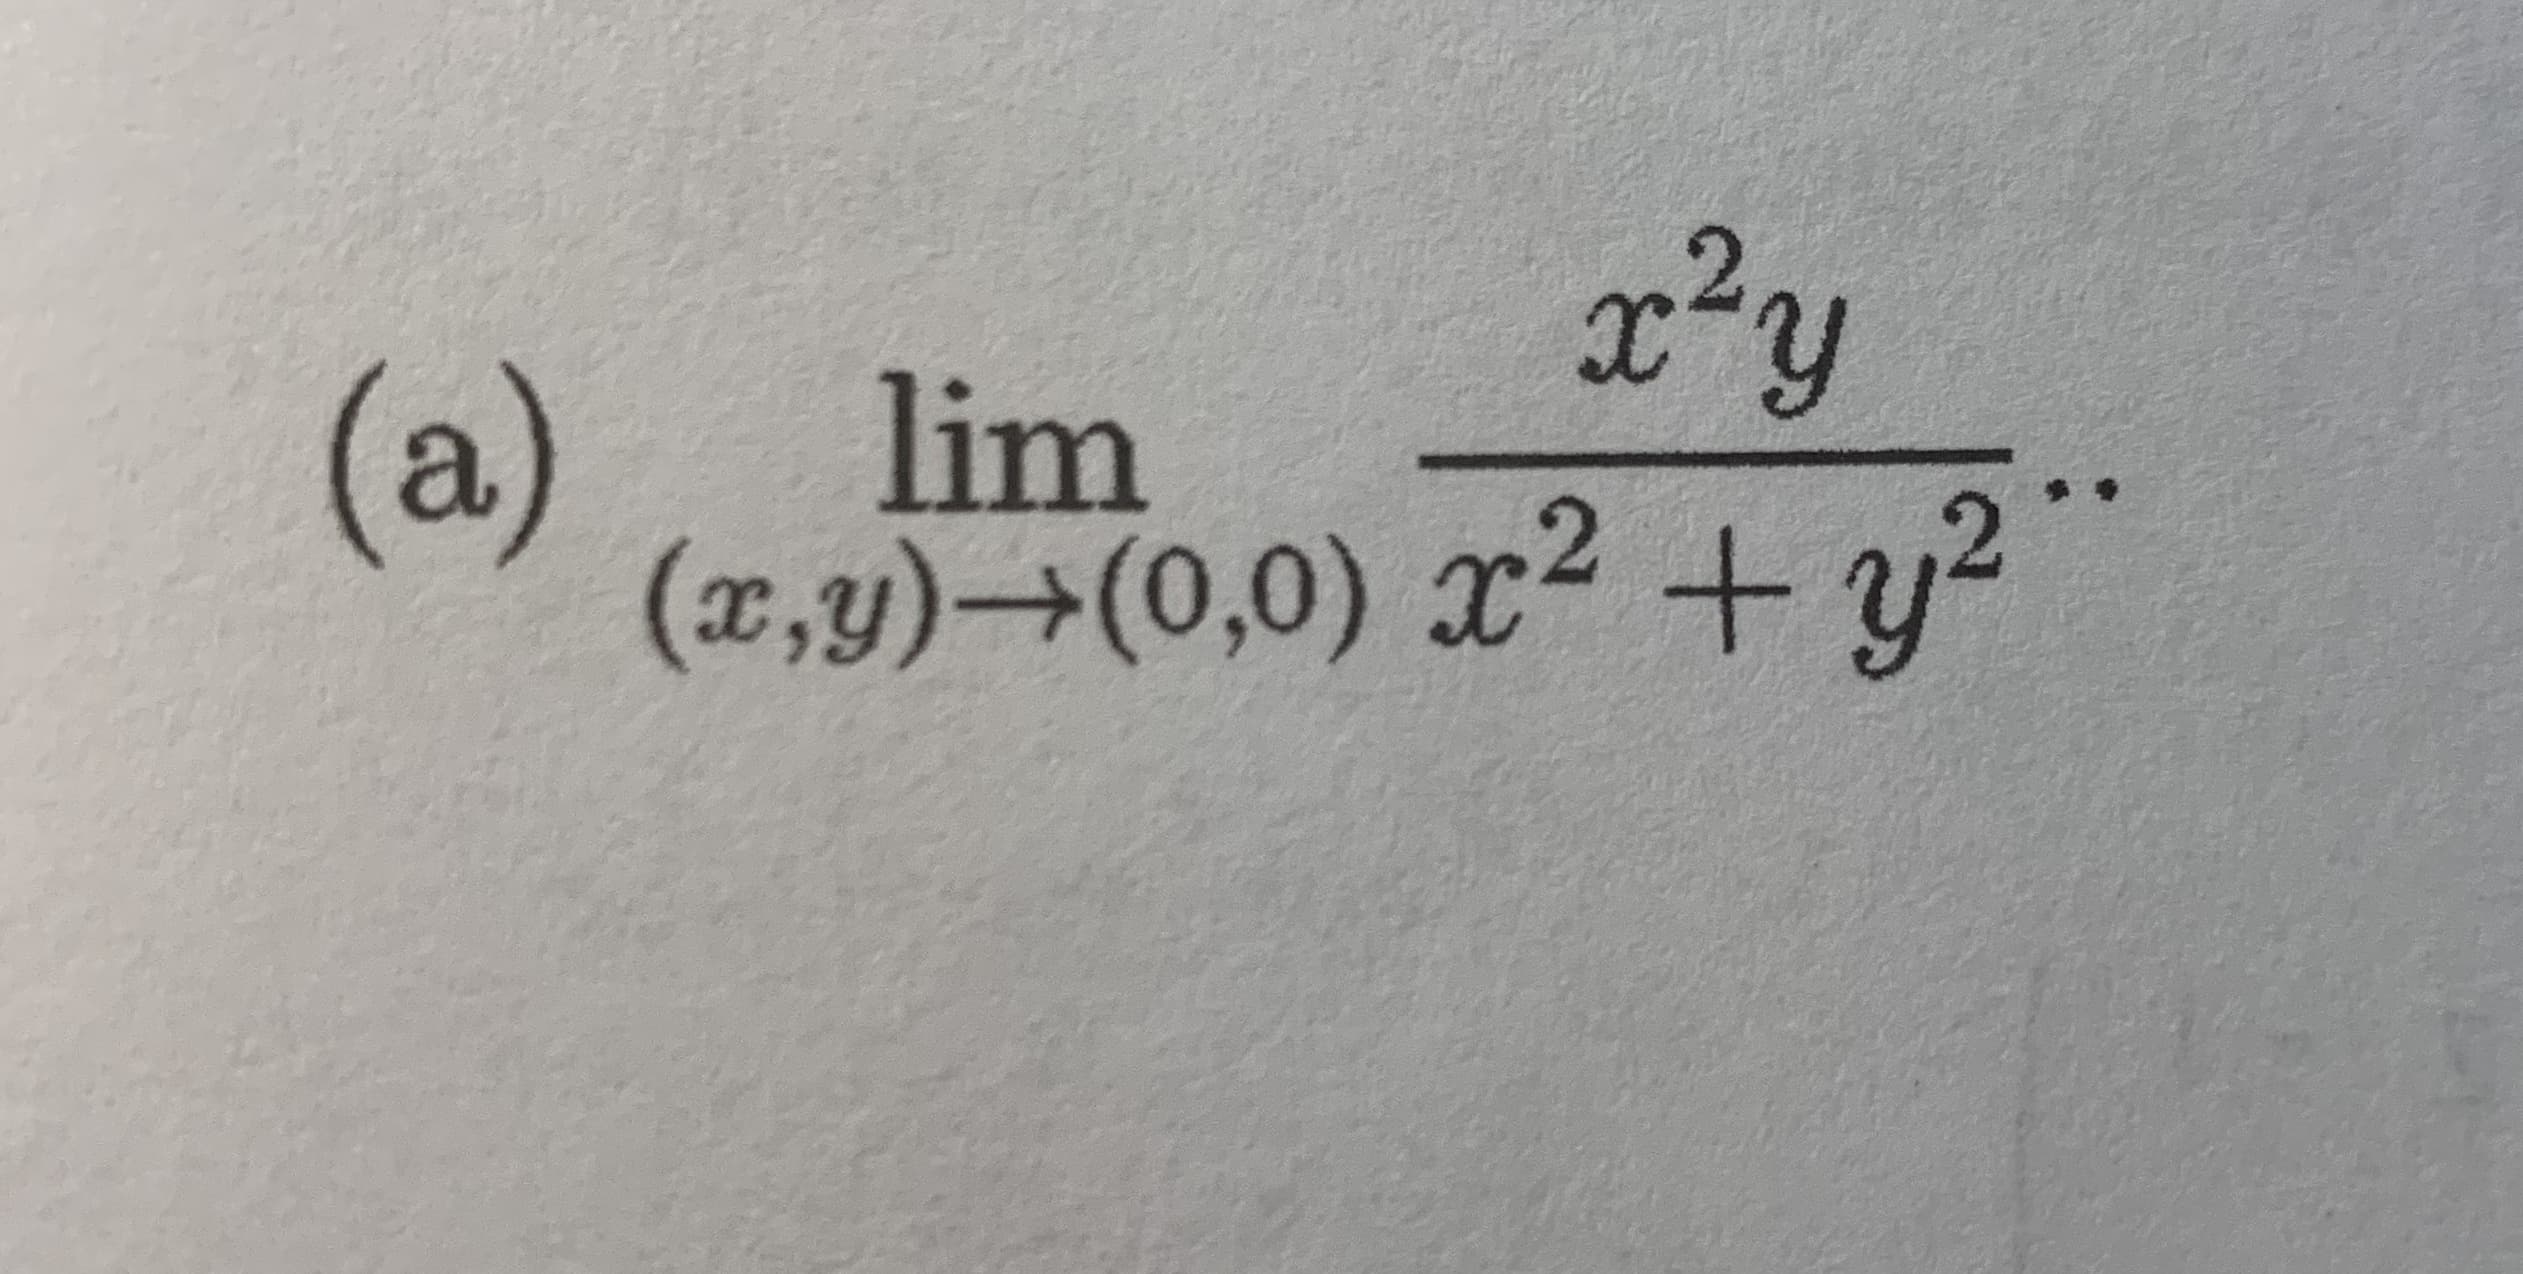 x²y
lim
(x,y)→(0,0) x2 + y?
